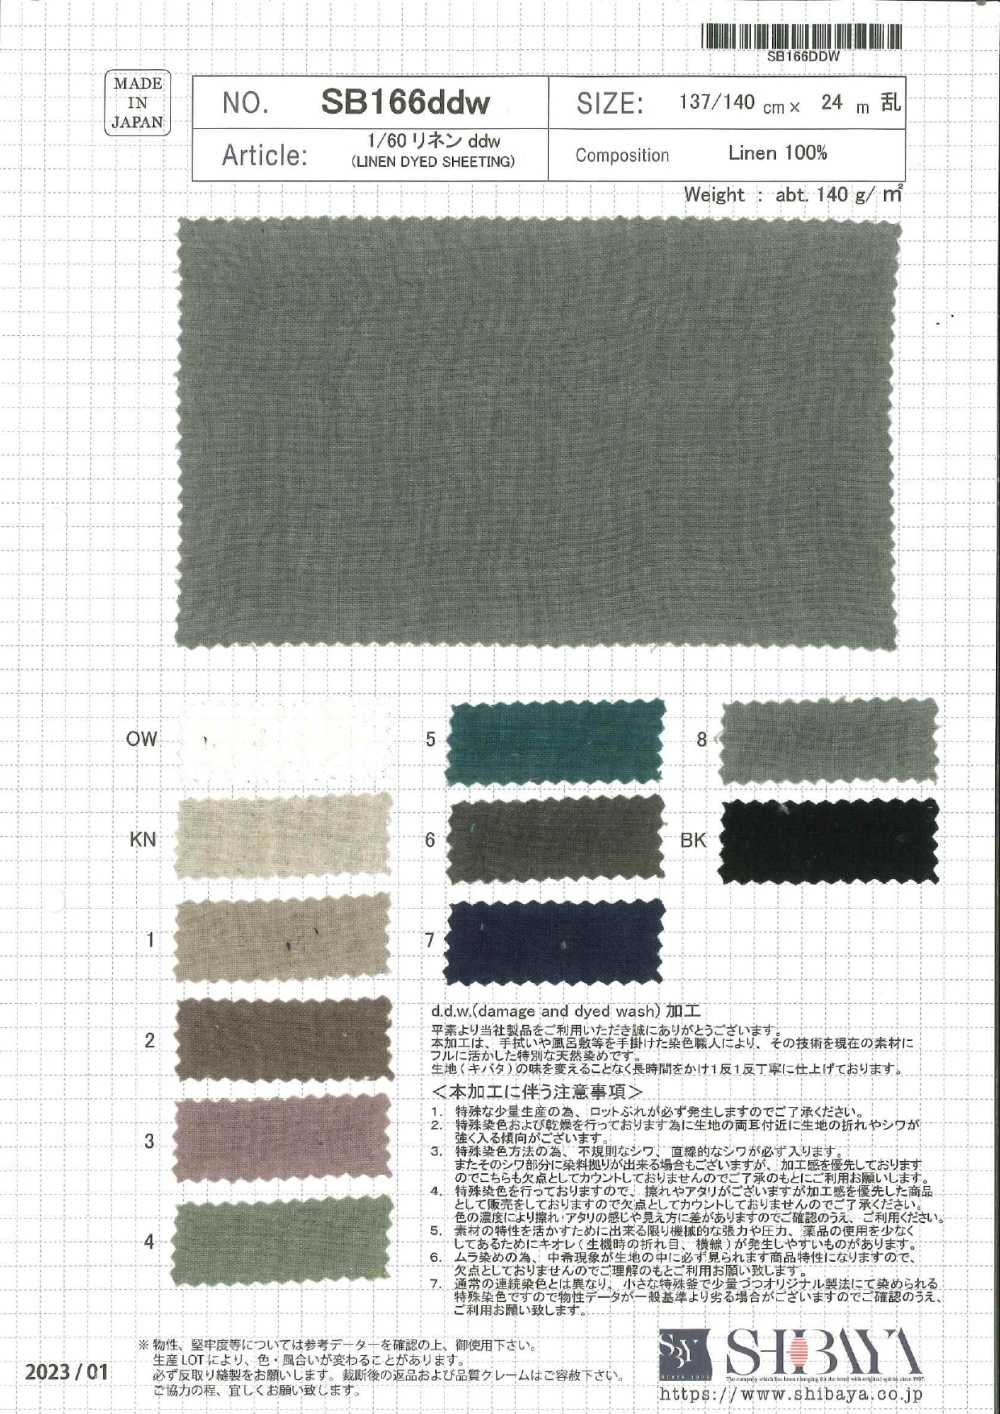 SB166ddw 1/60 Lino Ddw[Fabrica Textil] SHIBAYA